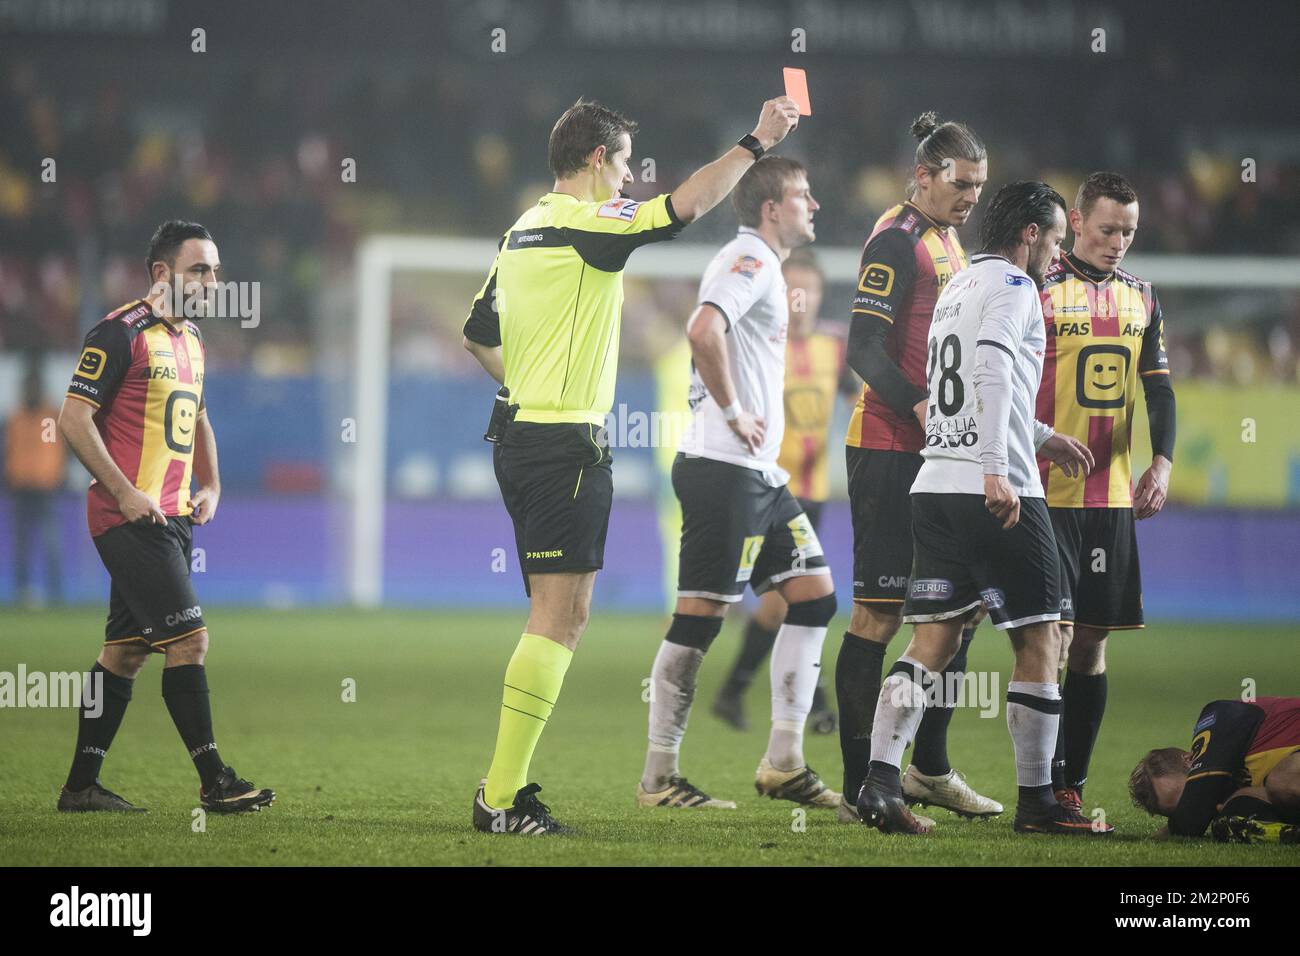 Guy Dufour de Roeselare reçoit une deuxième carte jaune de l'arbitre lors d'un match de football entre KV Mechelen et Roeselare, le vendredi 18 janvier 2019 à Mechelen, le 22nd jour de la division Proximus League 1B du championnat belge de football. BELGA PHOTO JASPER JACOBS Banque D'Images